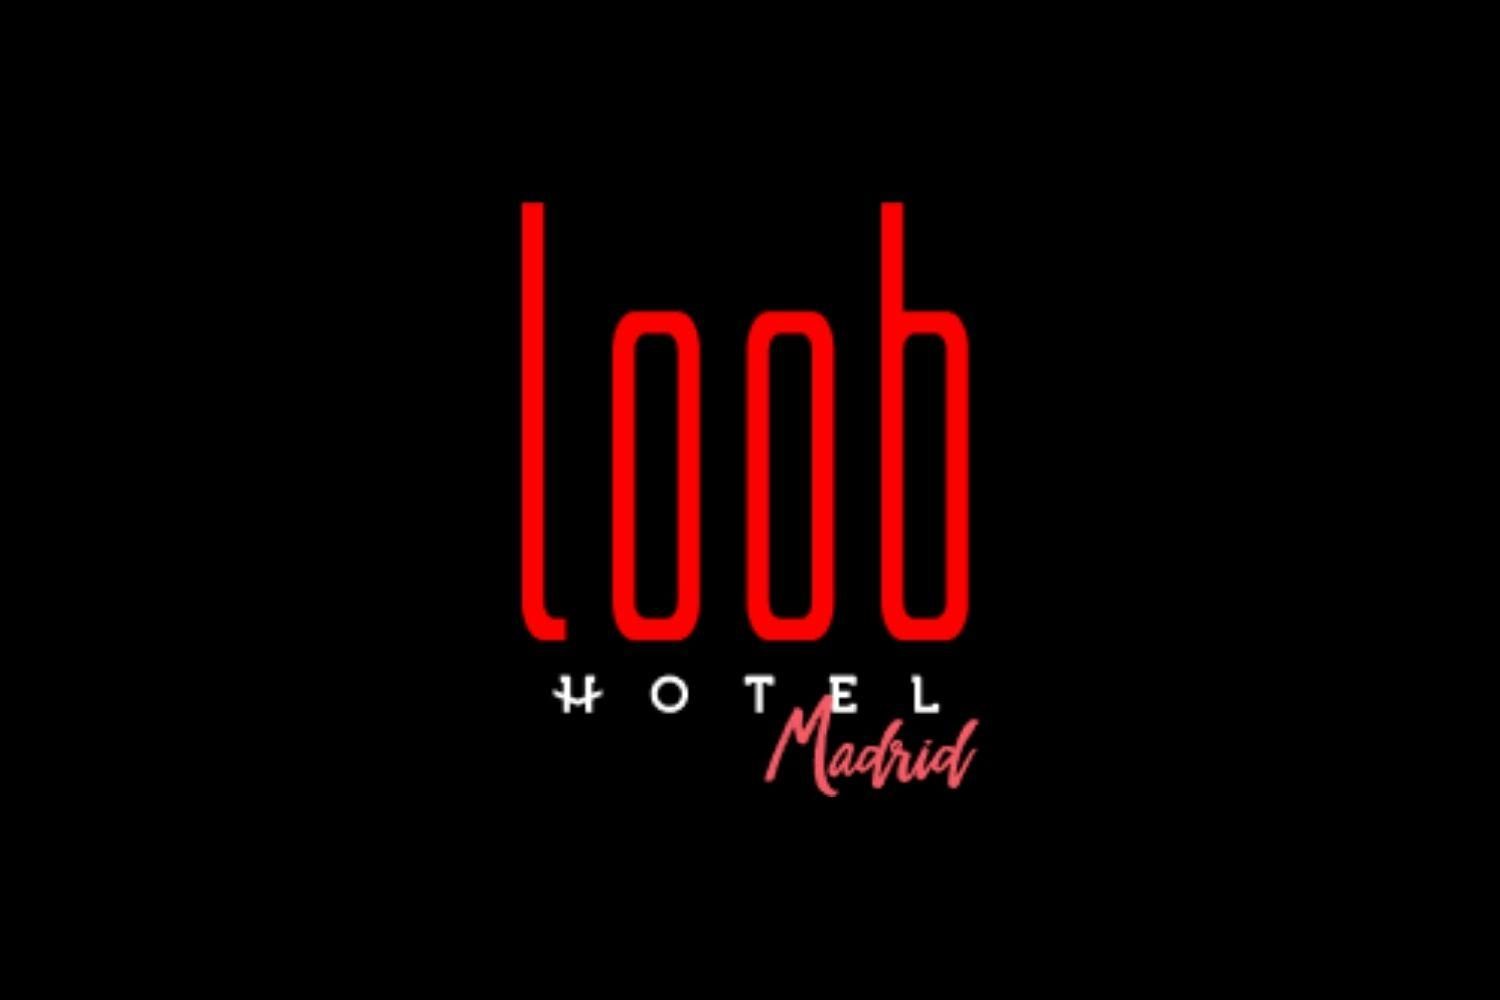 Hotel Loob Madrid